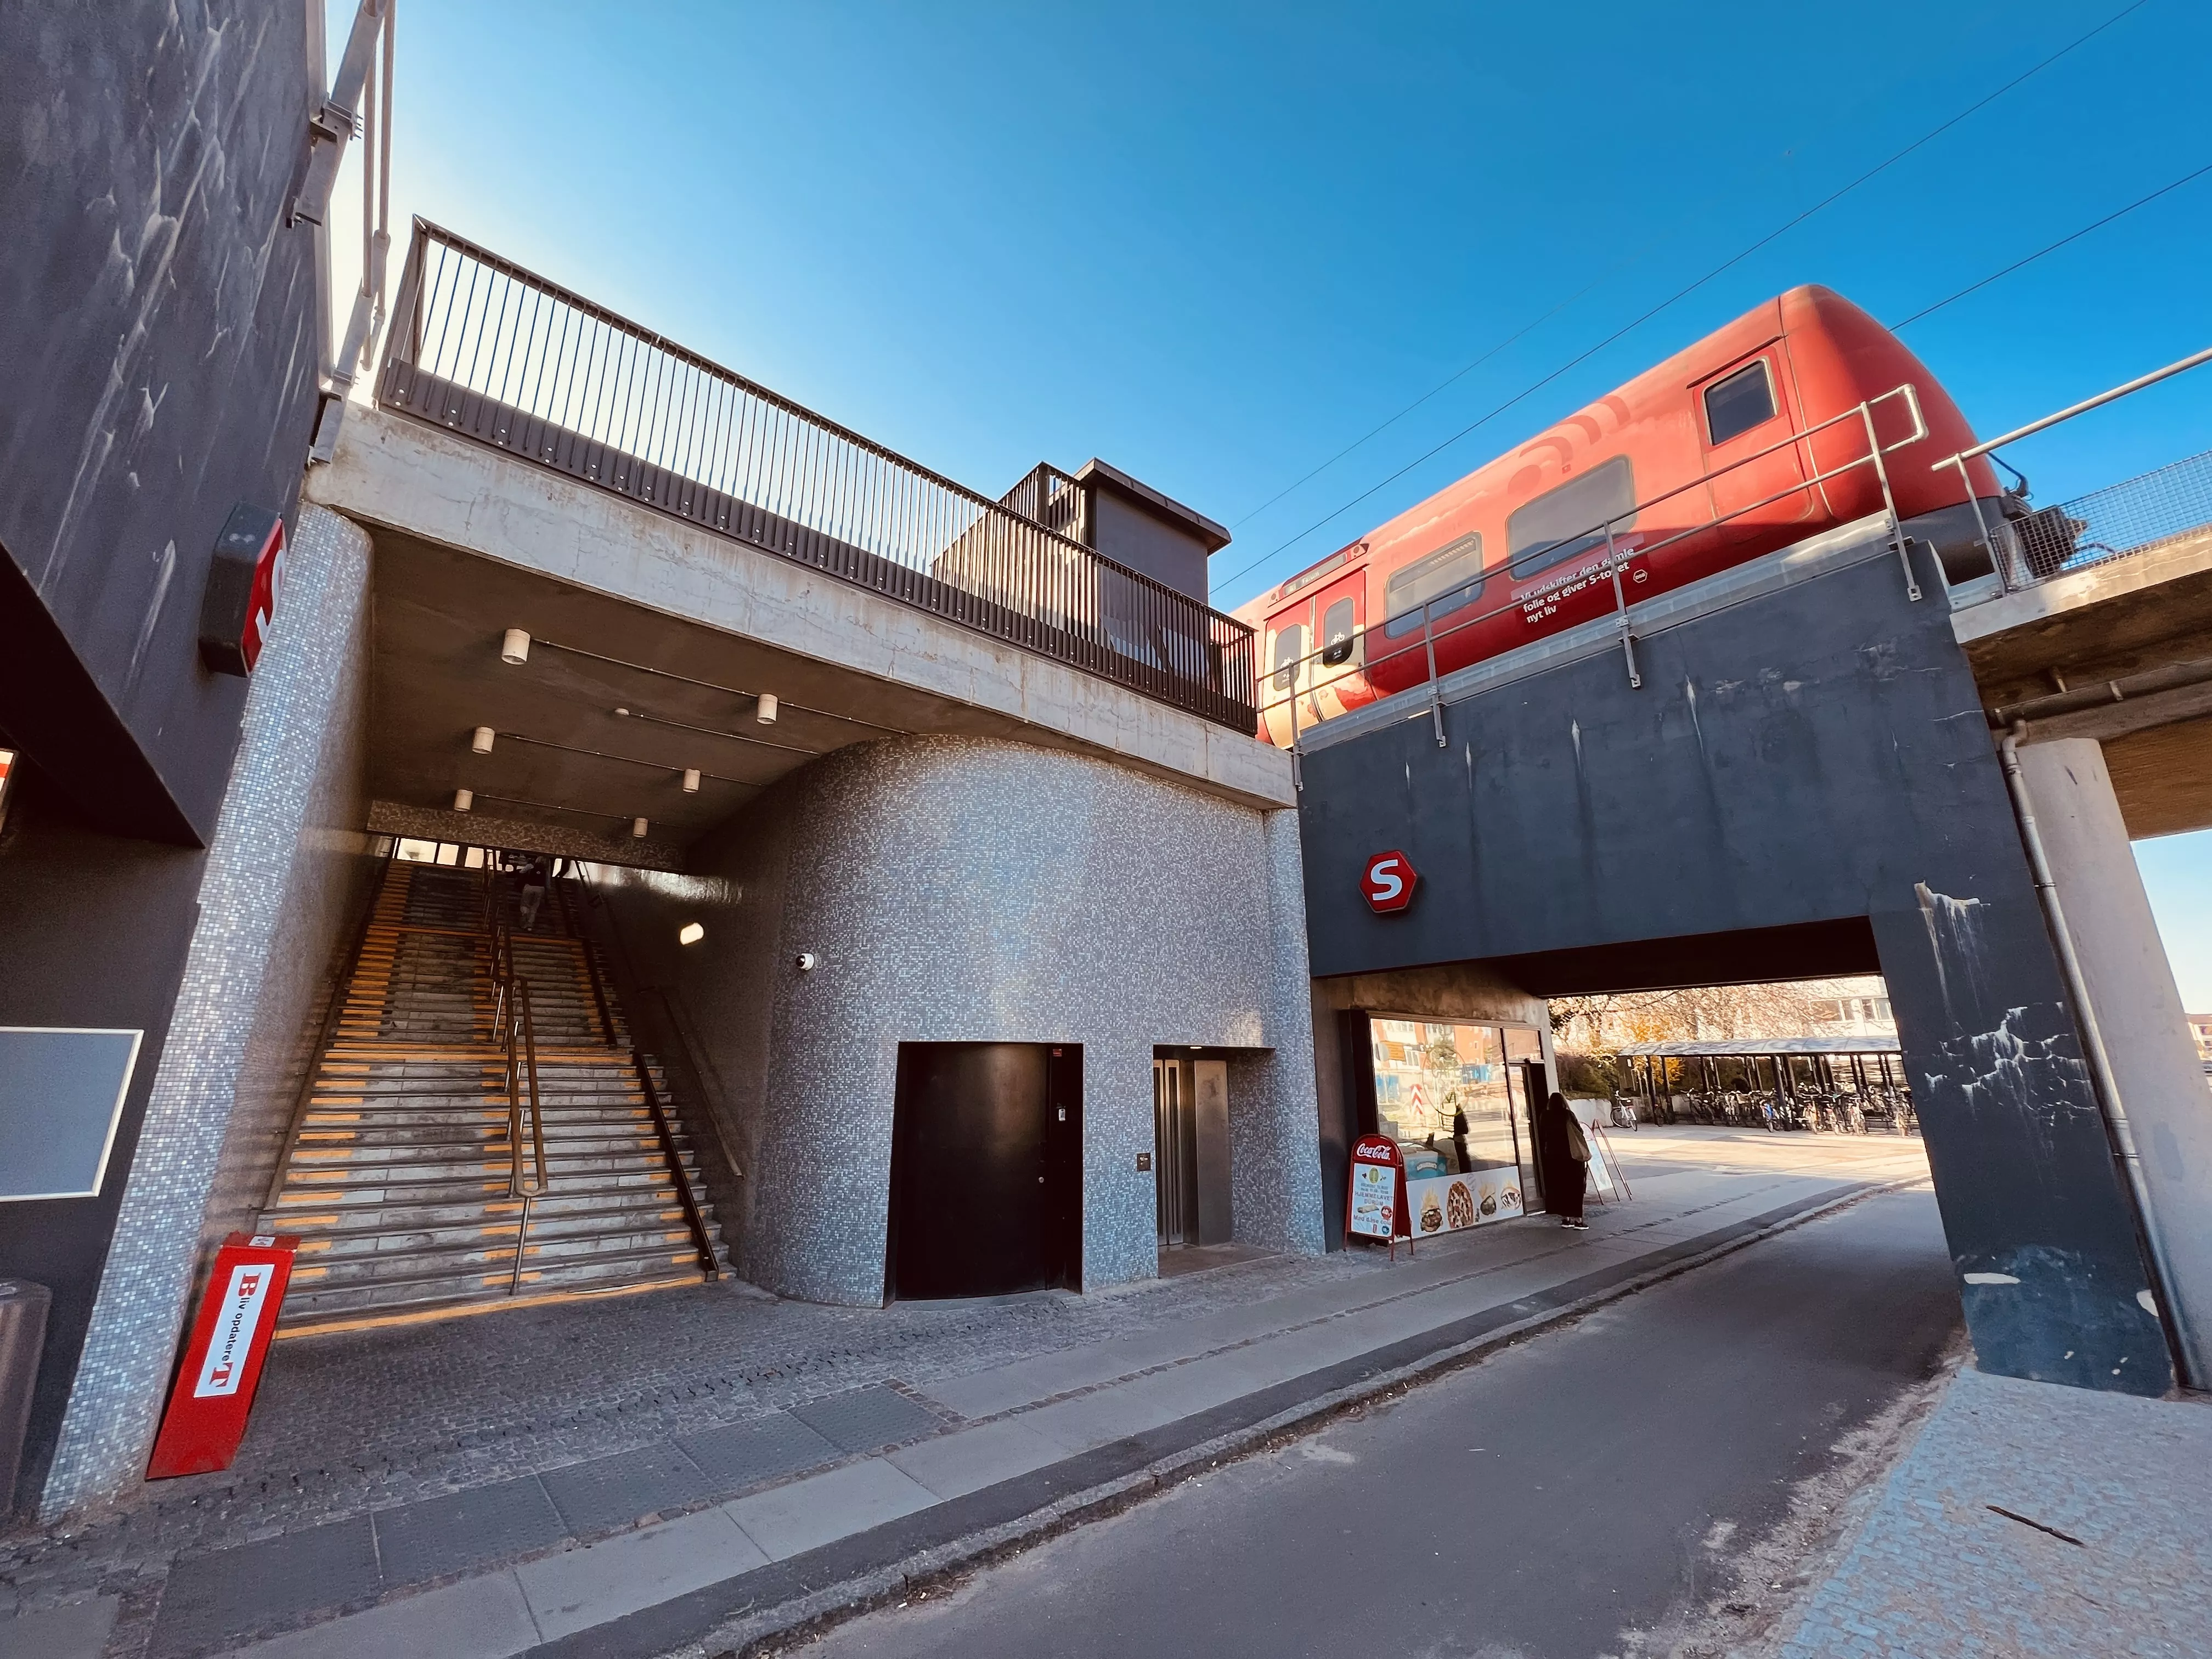 Billede af tog ud for Buddinge S-togstrinbræt.